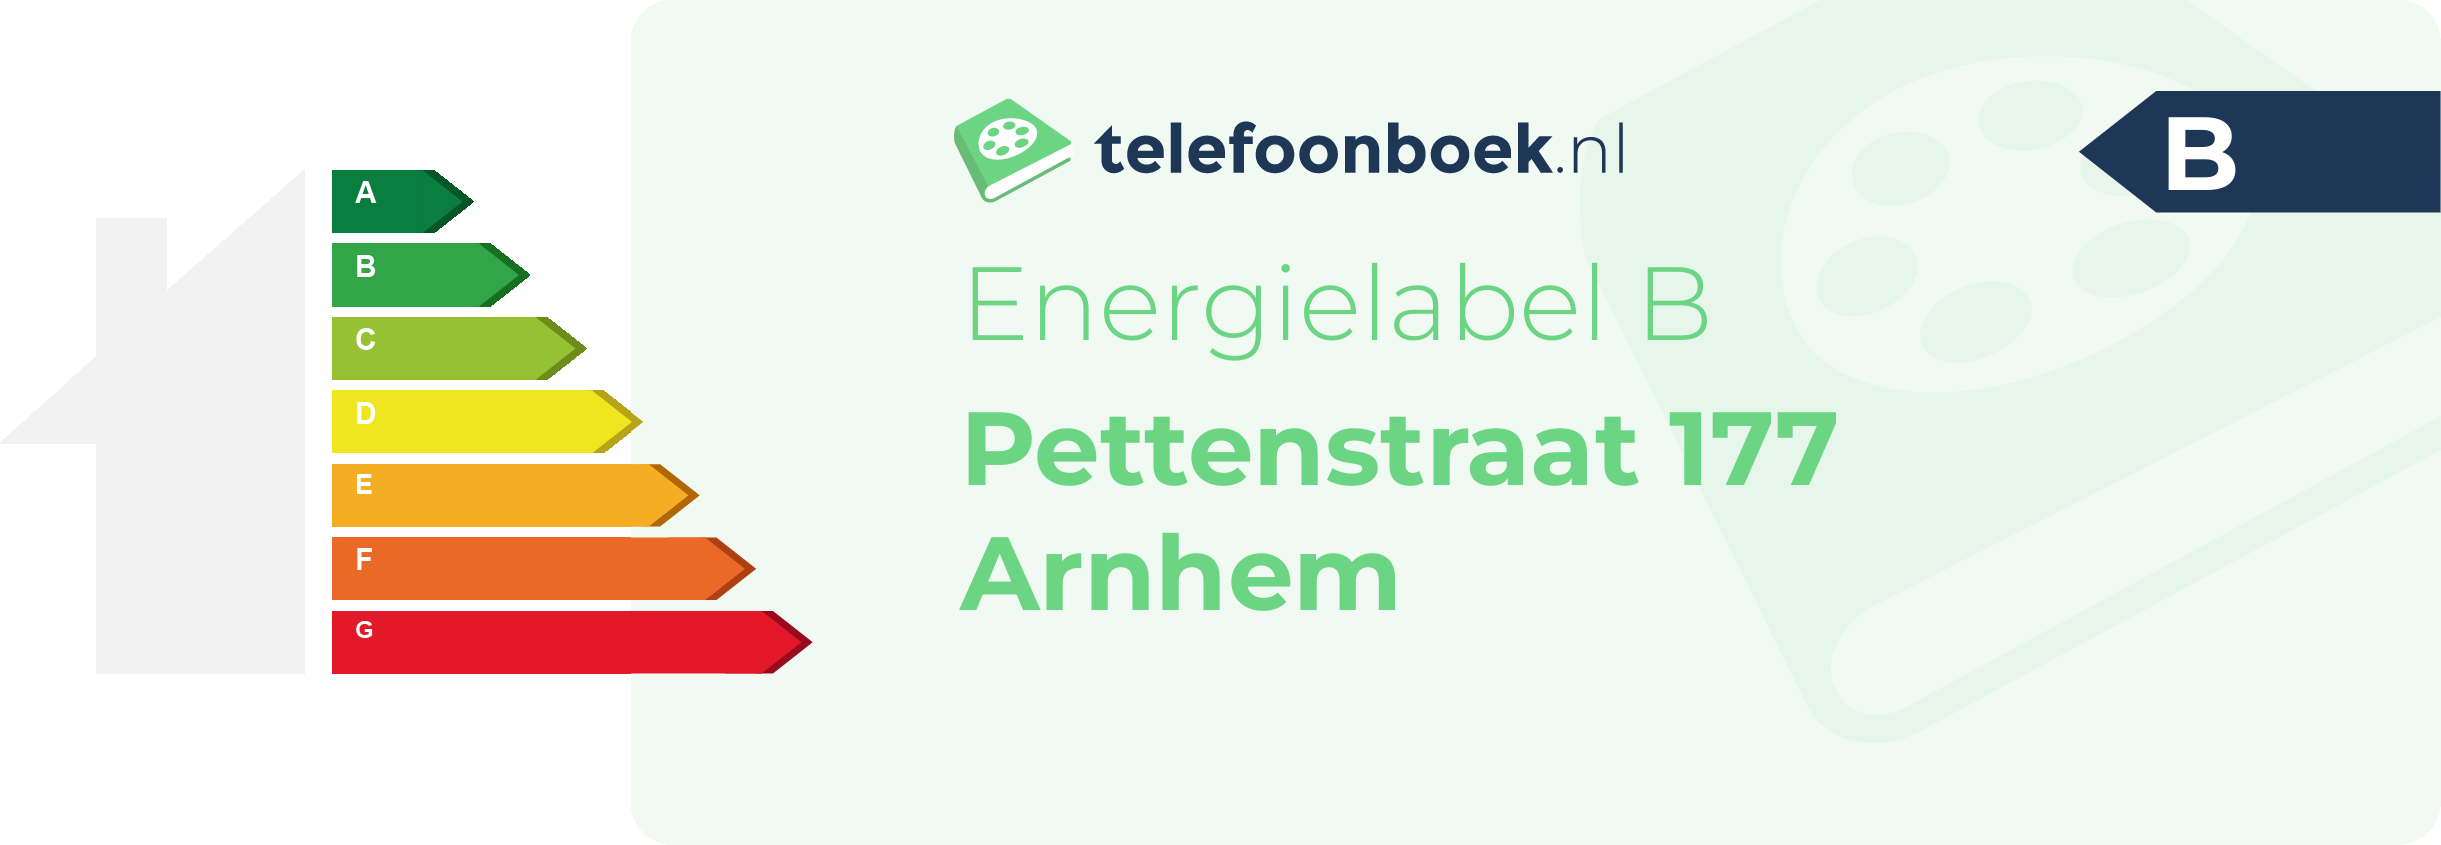 Energielabel Pettenstraat 177 Arnhem